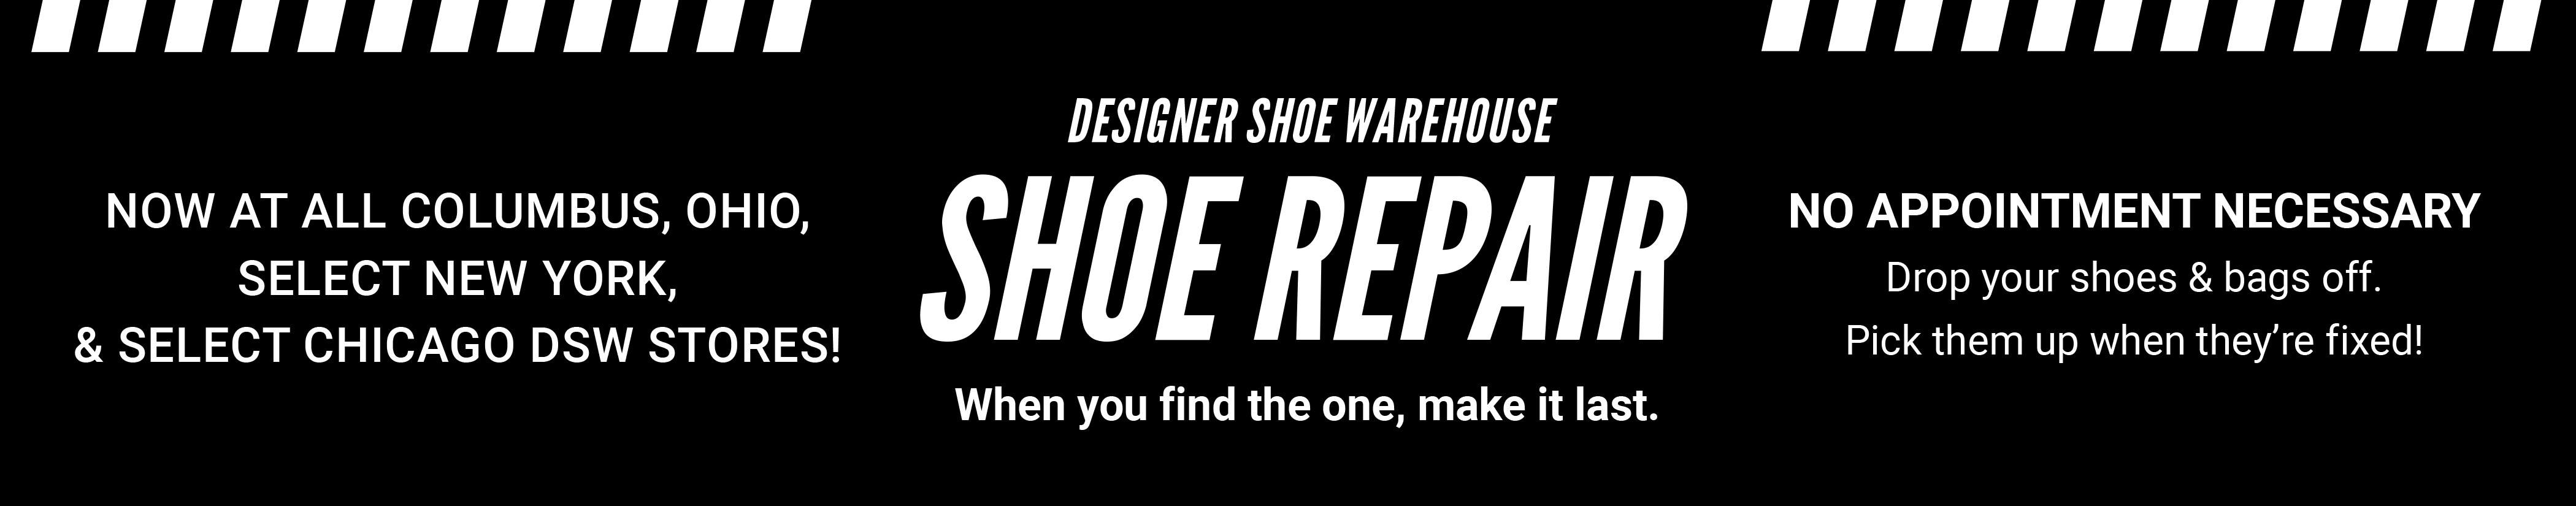 Mario Rossi Shoe Repair 23 Reviews Shoe Repair 158 W Main St Somerville Nj Phone Number Yelp